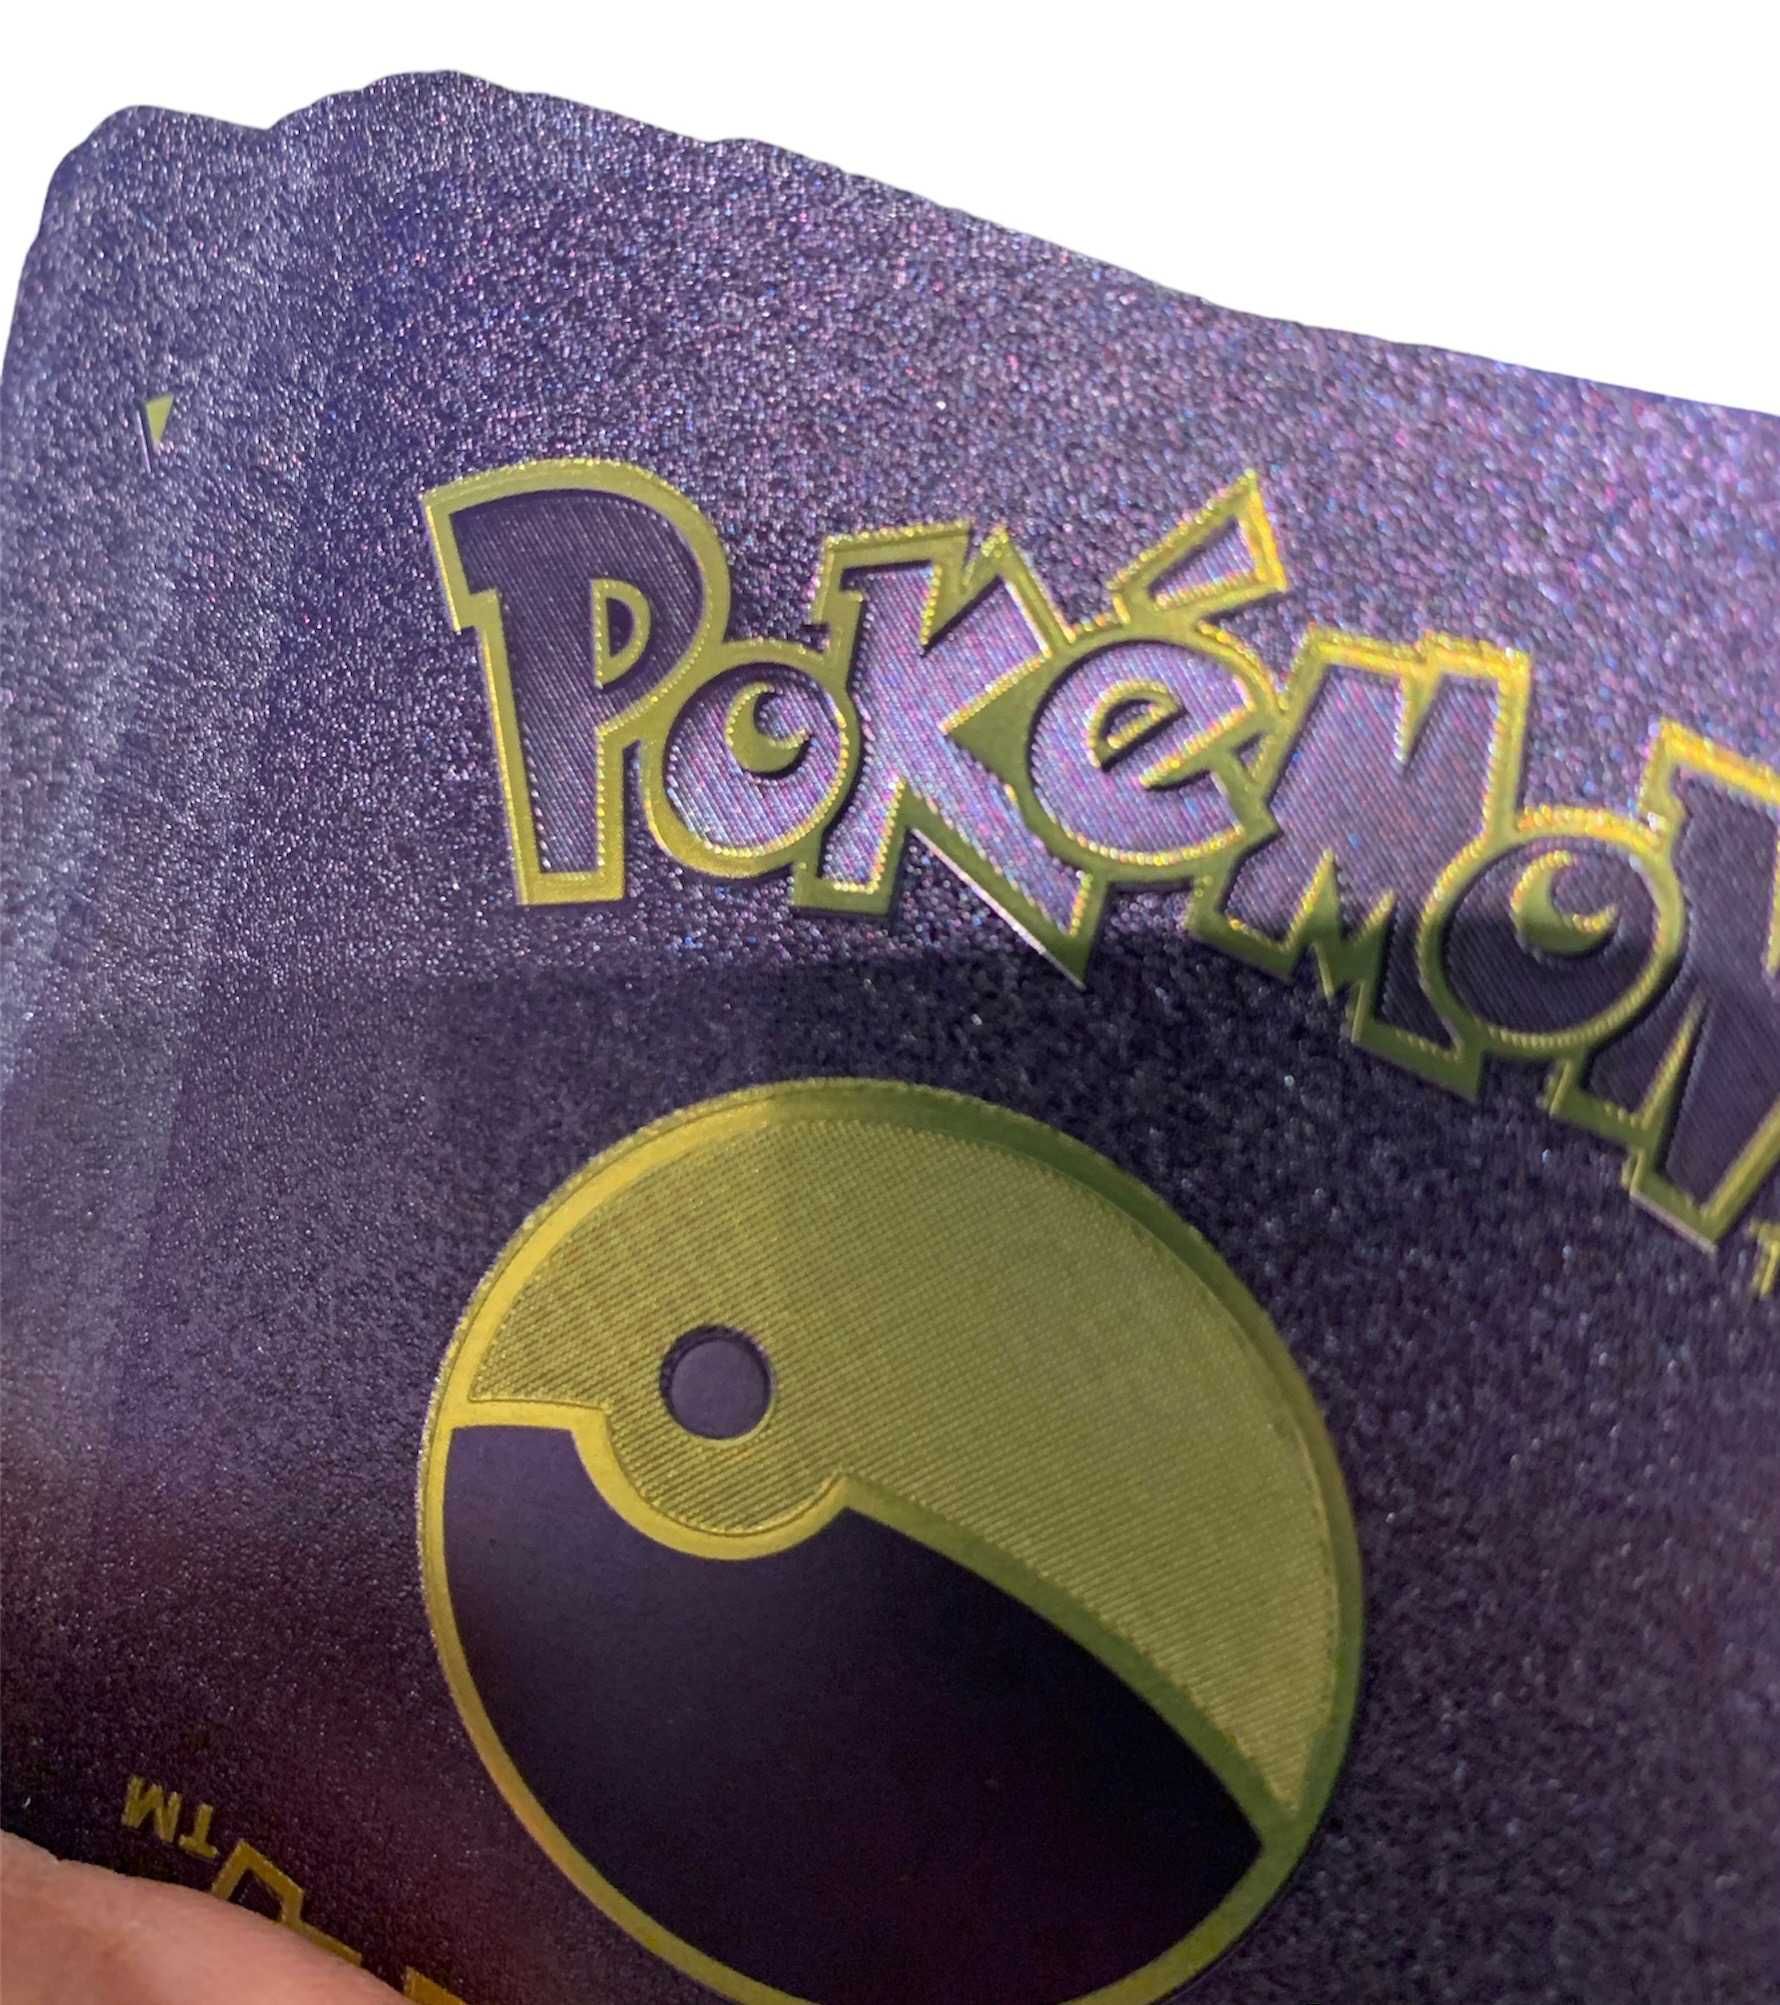 55 Fioletowe Karty Pokemon HP Metalizowane nie złote czarne srebrne